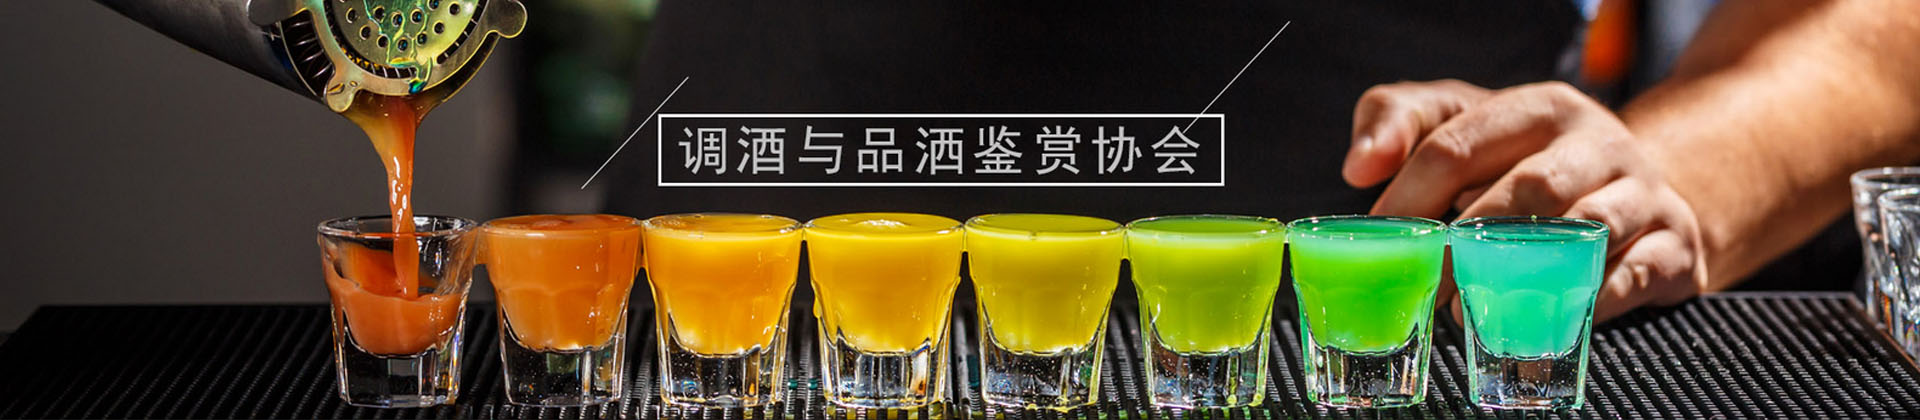 广州调酒与品酒鉴赏协会